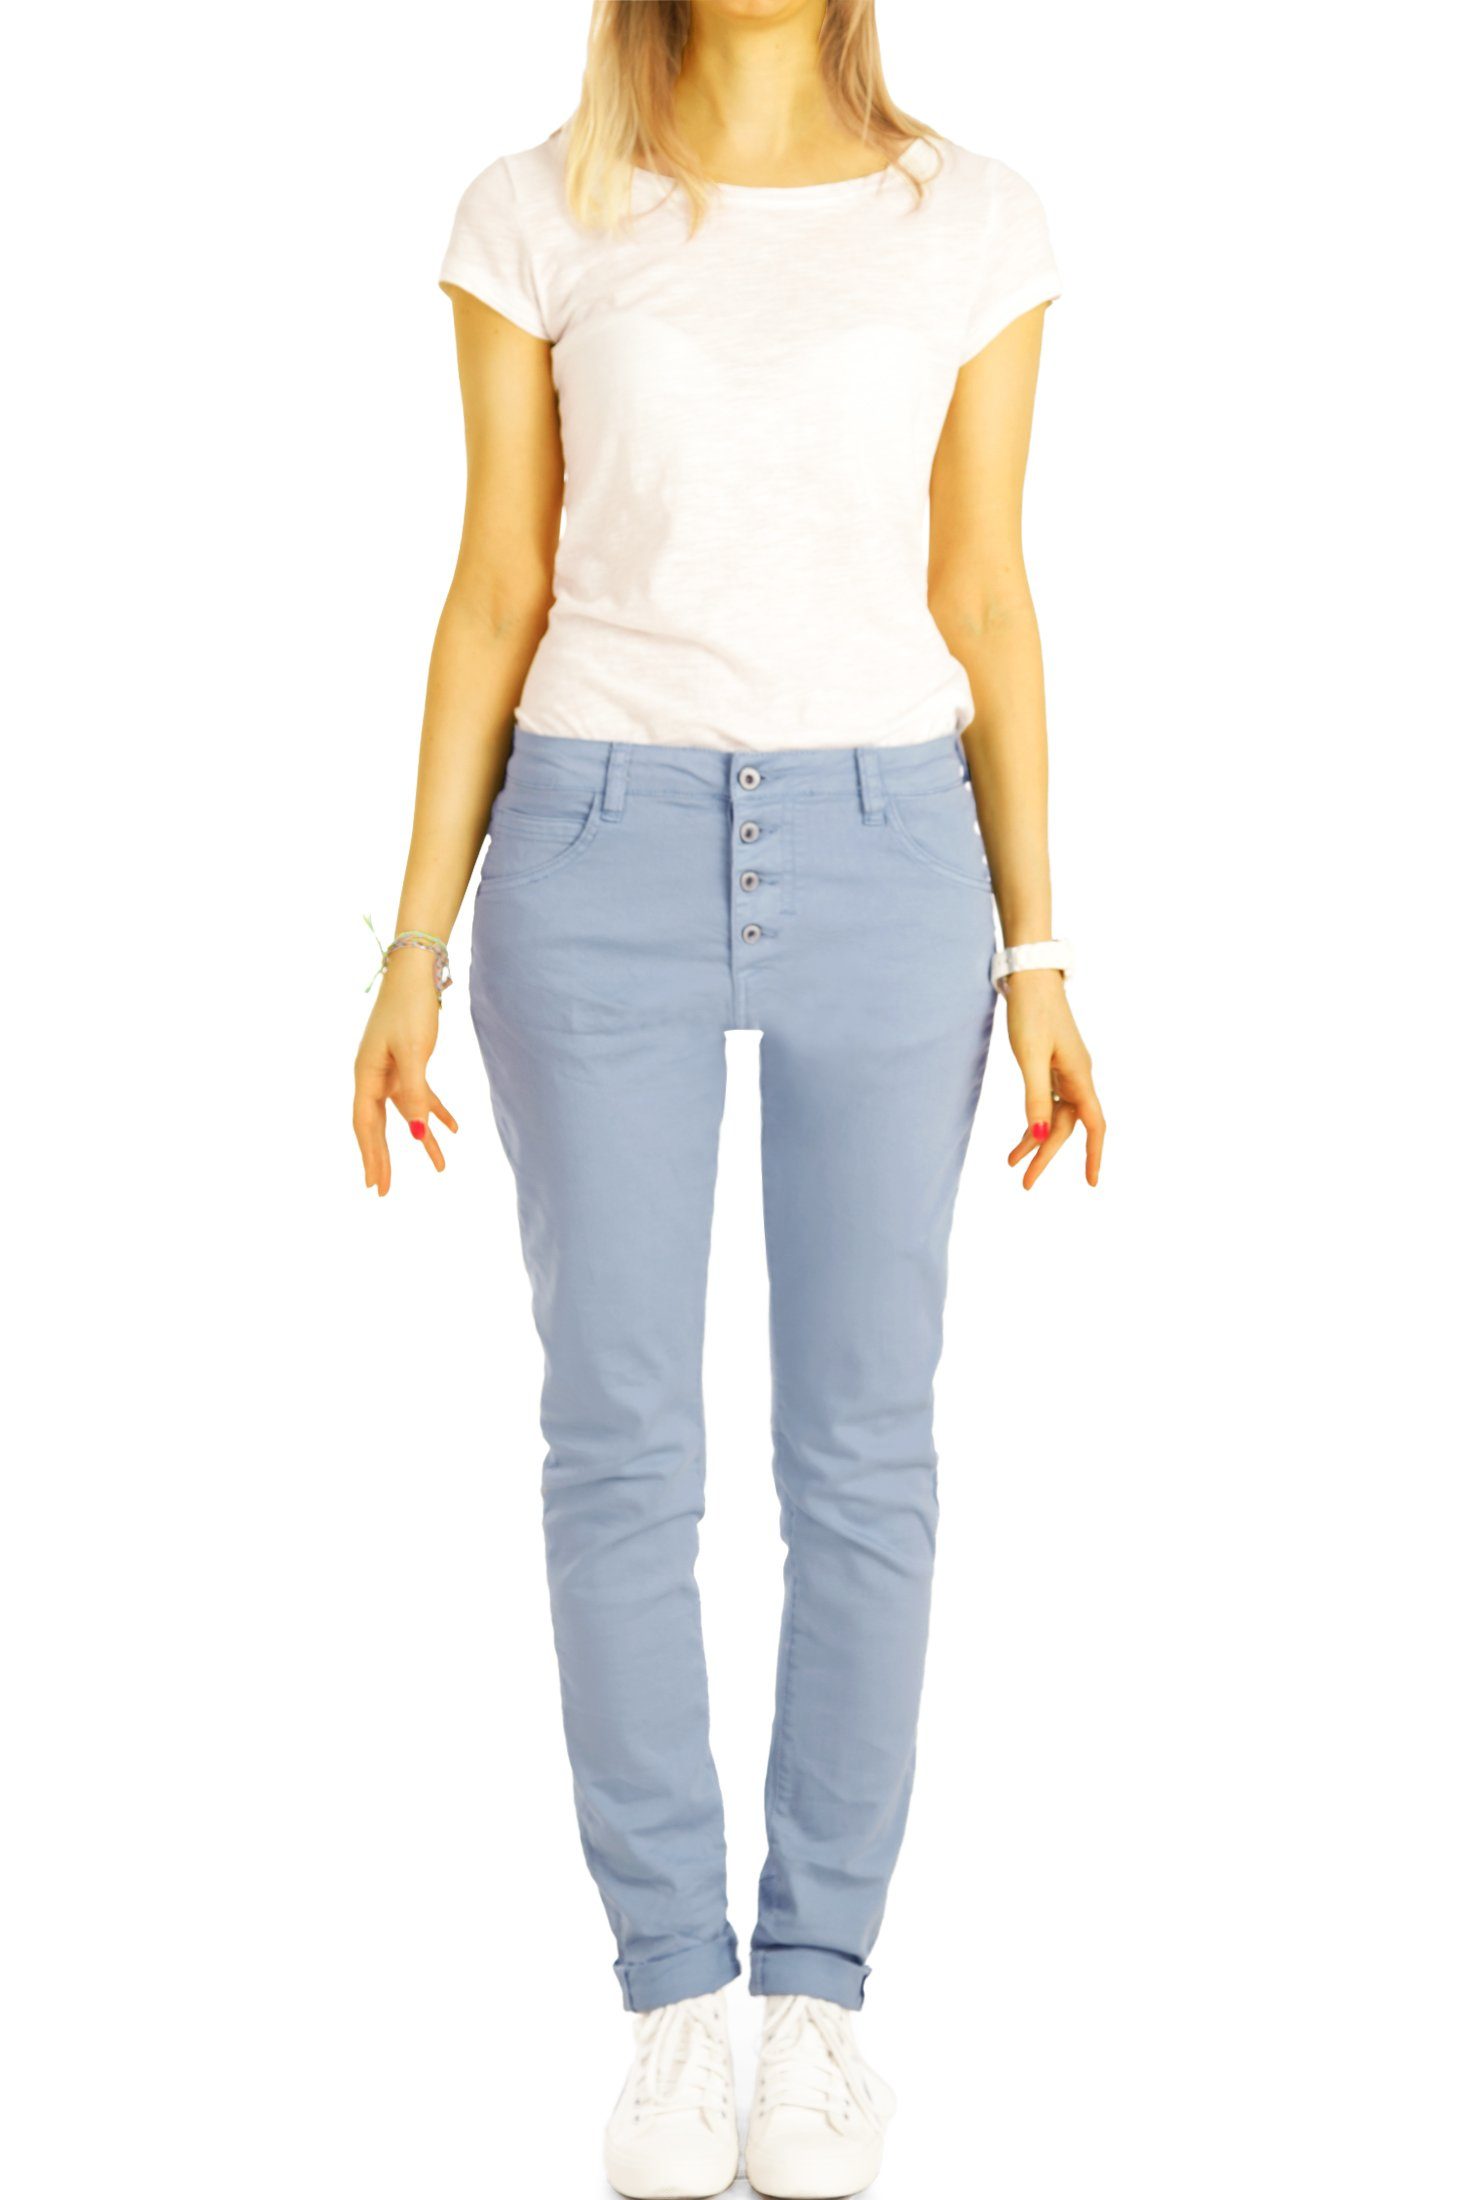 Waist be vordere Medium mit j30L-3 - Knopfleiste styled Stoffhose Damen Boyfriend Knopfleiste weiß Hose Jeans -